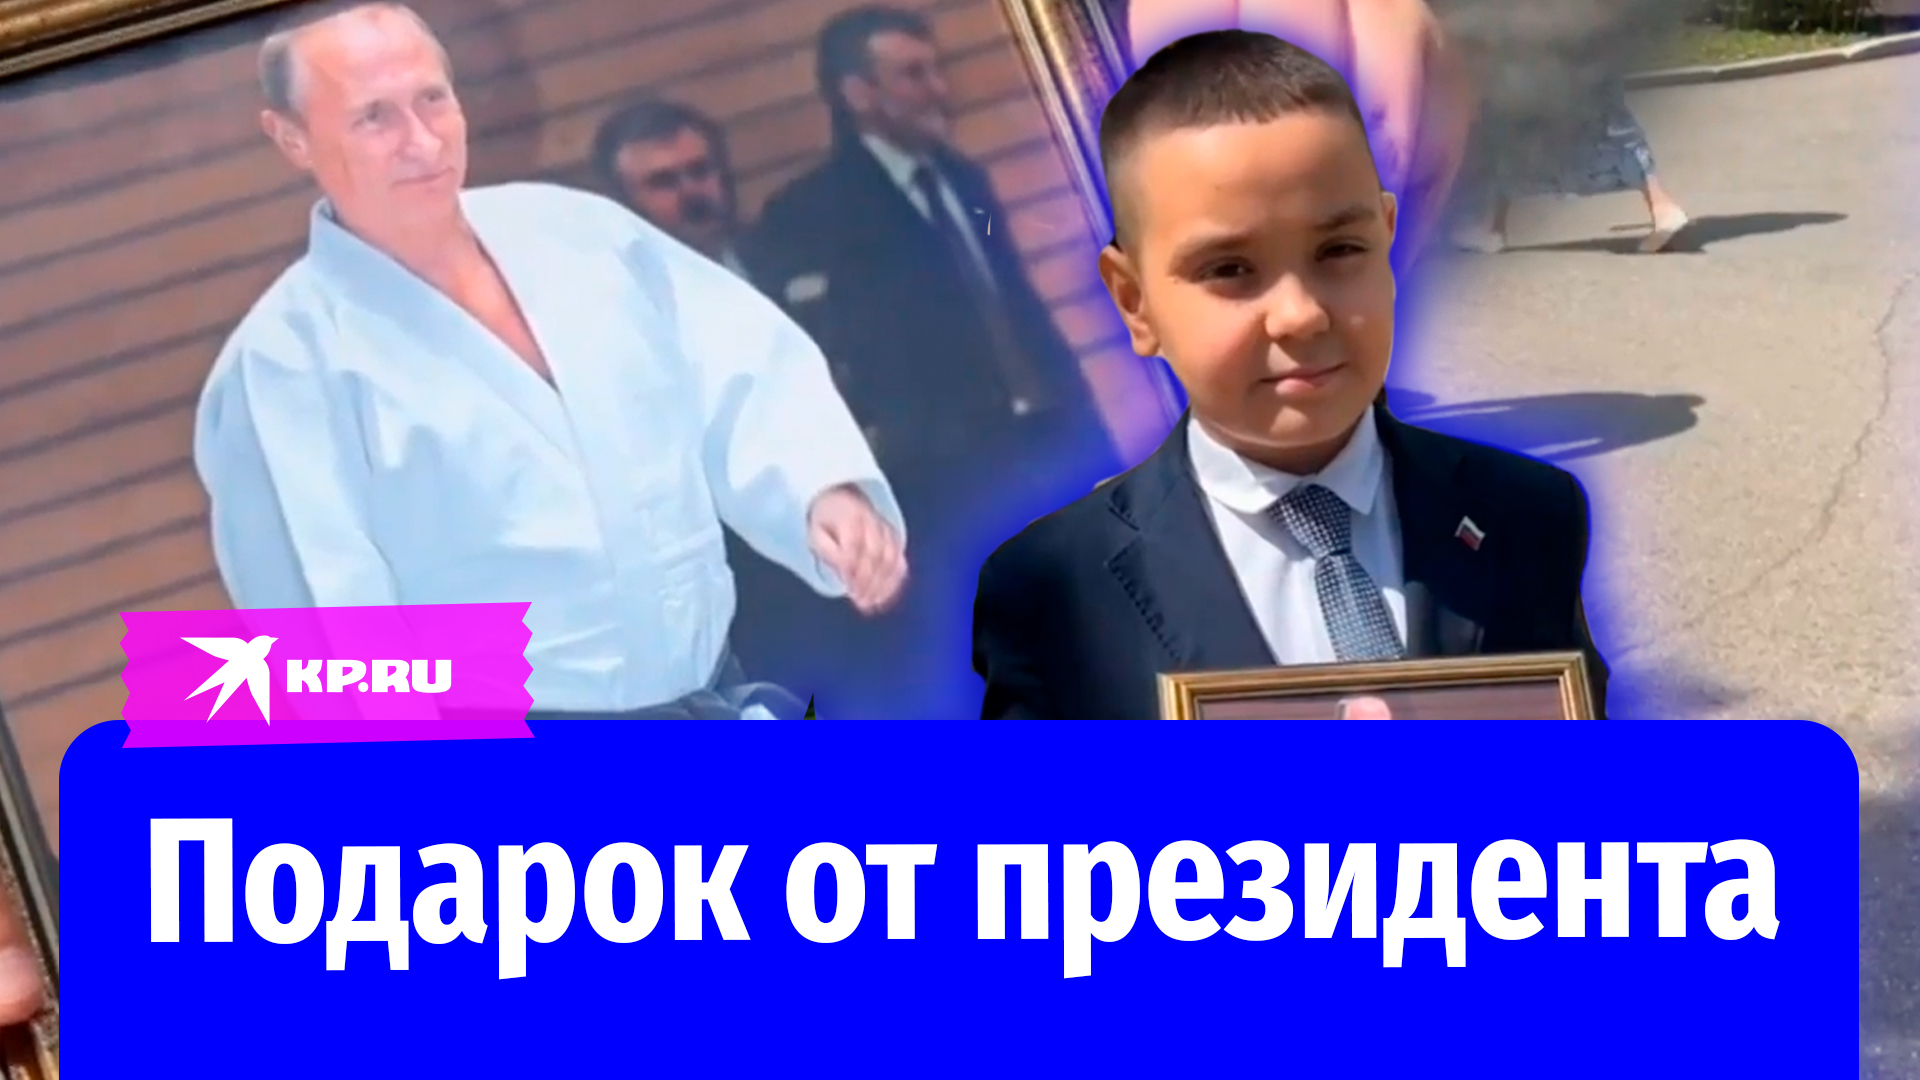 Школьнику из Уфы передали подарок от президента – портрет Путина с автографом